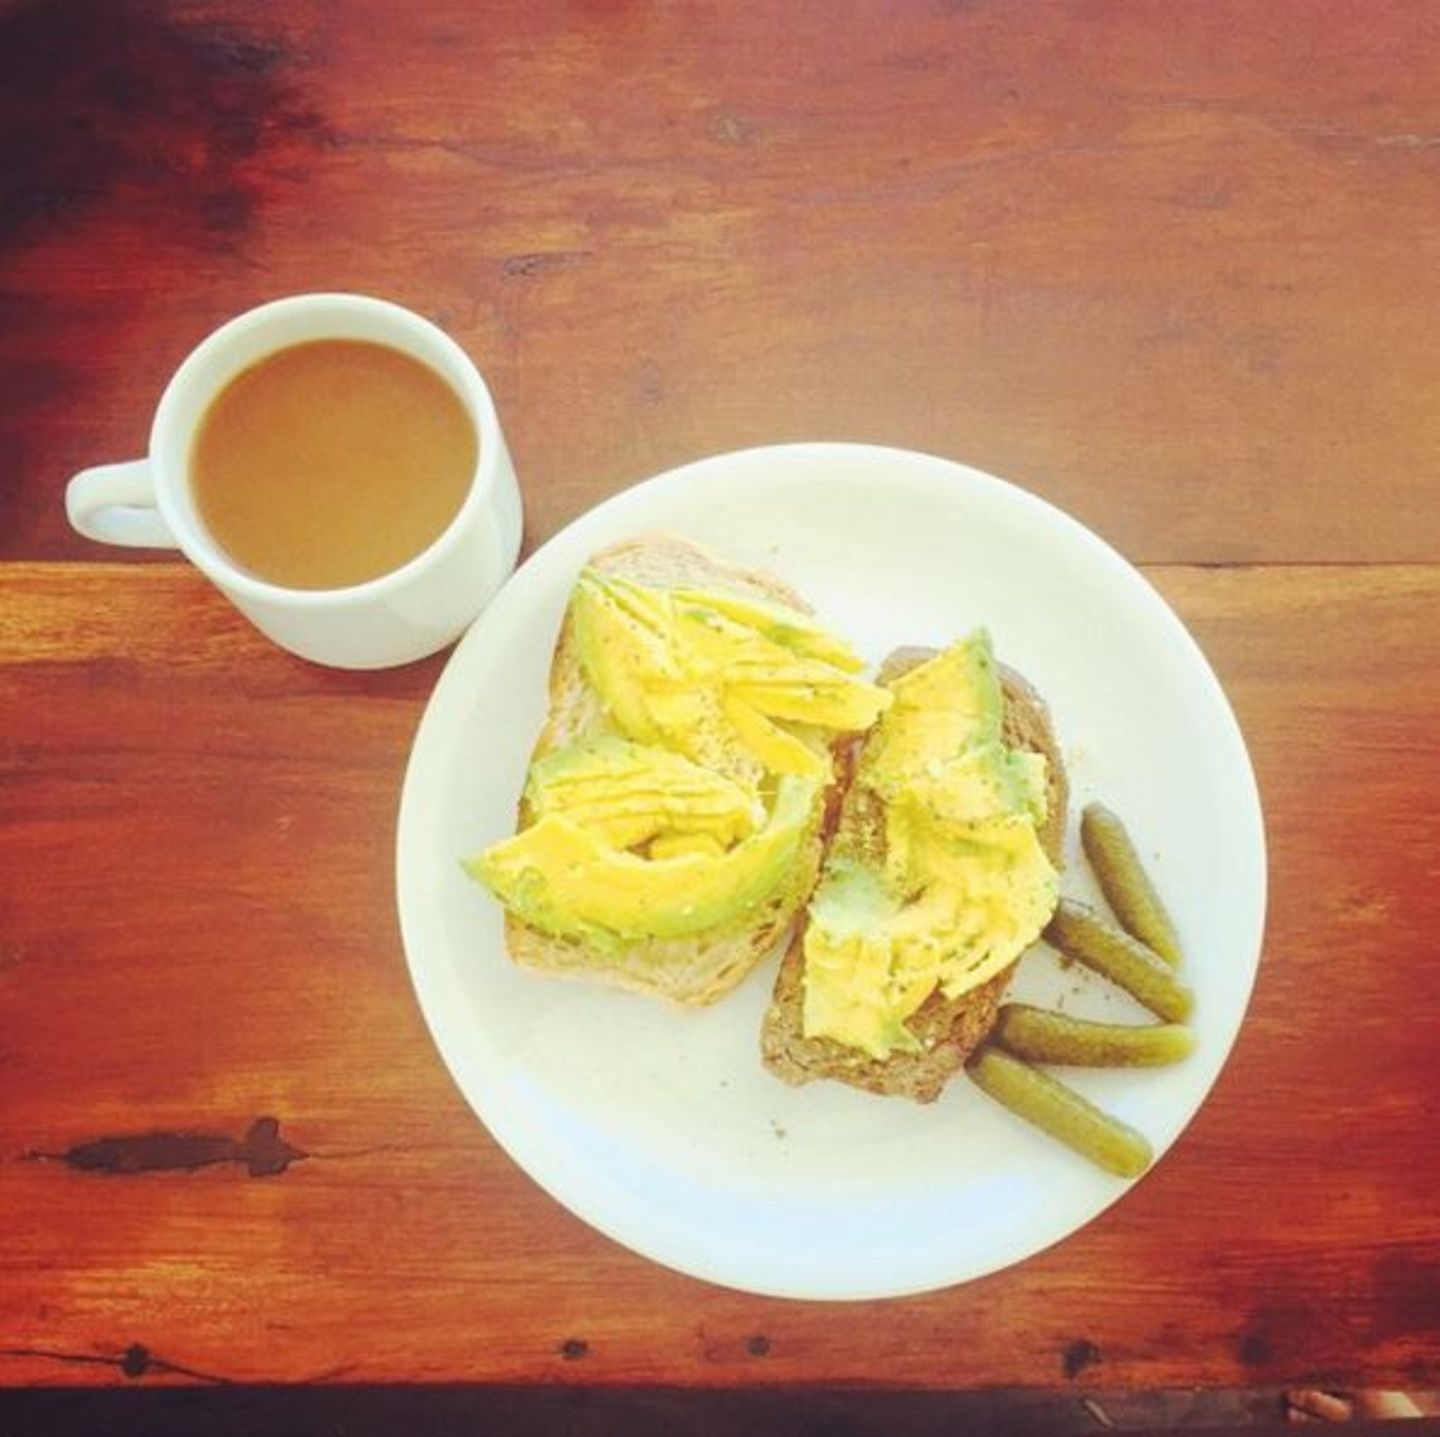 Stars + ihr Essen: Jessica Alba freut sich via Instagram über ihren Advocado-Toast. Sie genießt ihn mit sauren Gürkchen - und einer Tasse Milchkaffee. Na denn: Guten Appetit.